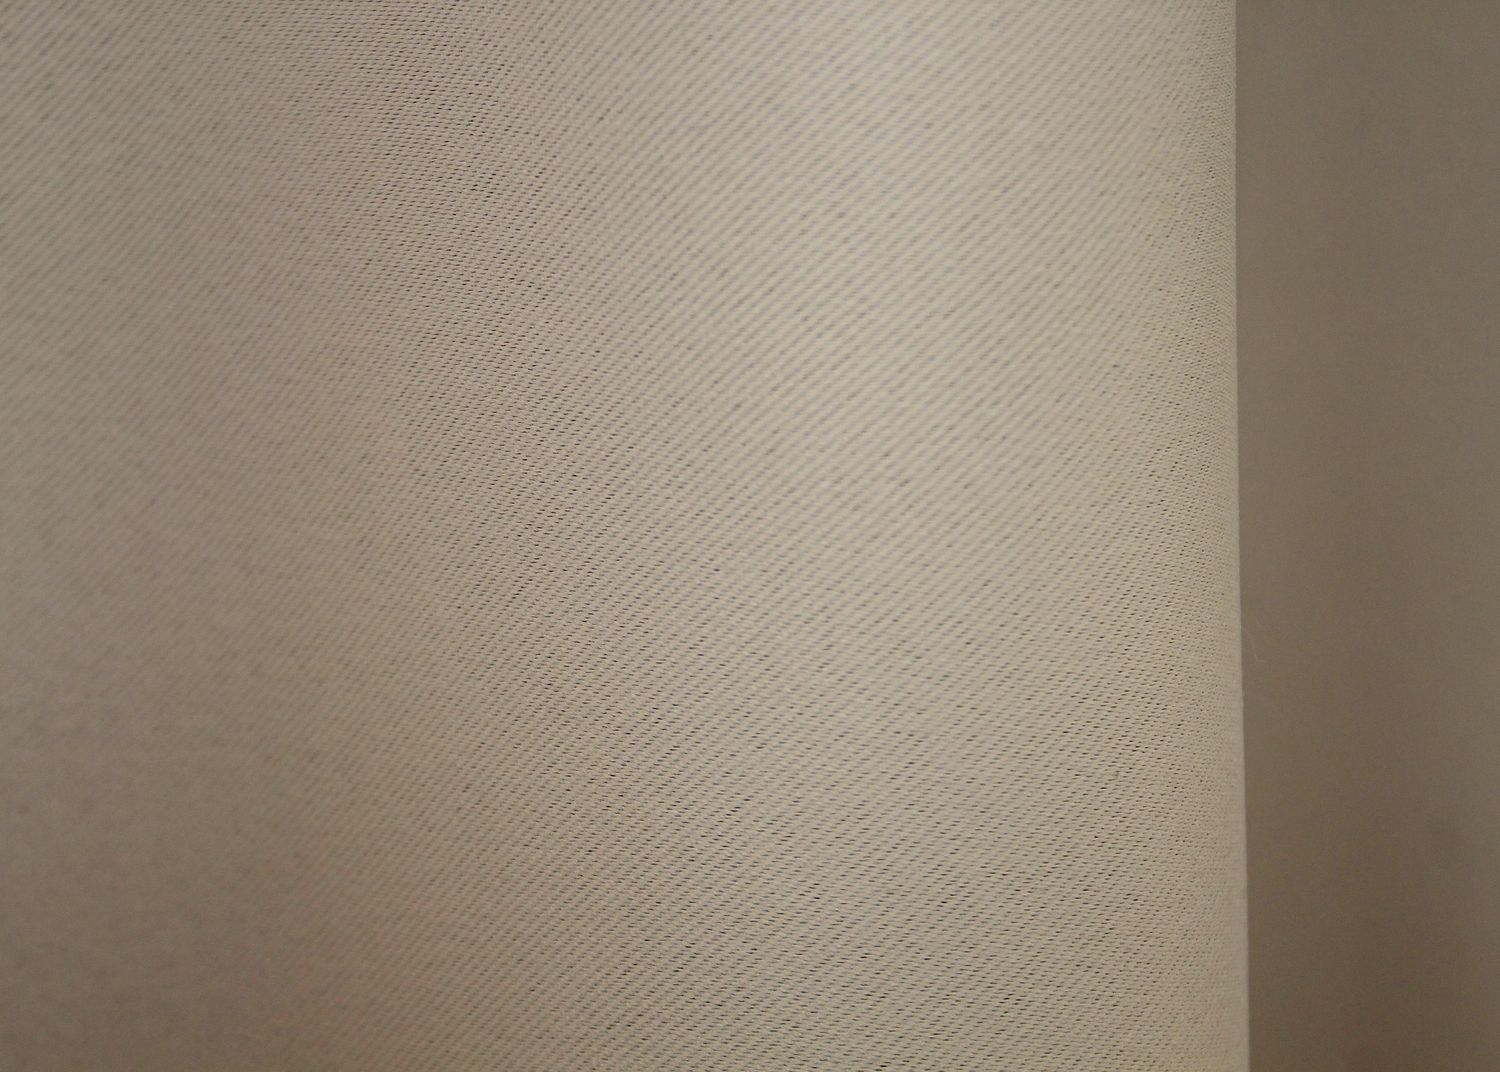 Комплект штор із тканини блекаут "Fusion Dimout" колір бежевий 827ш, Бежевий, Комплект штор (2 шт. 1,5х2,7 м.), Класичні, Без ламбрекена, Довгі, 1,5 м., 2,7 м., 150, 270, 2 - 3 м., В комплекті 2 шт., Тасьма